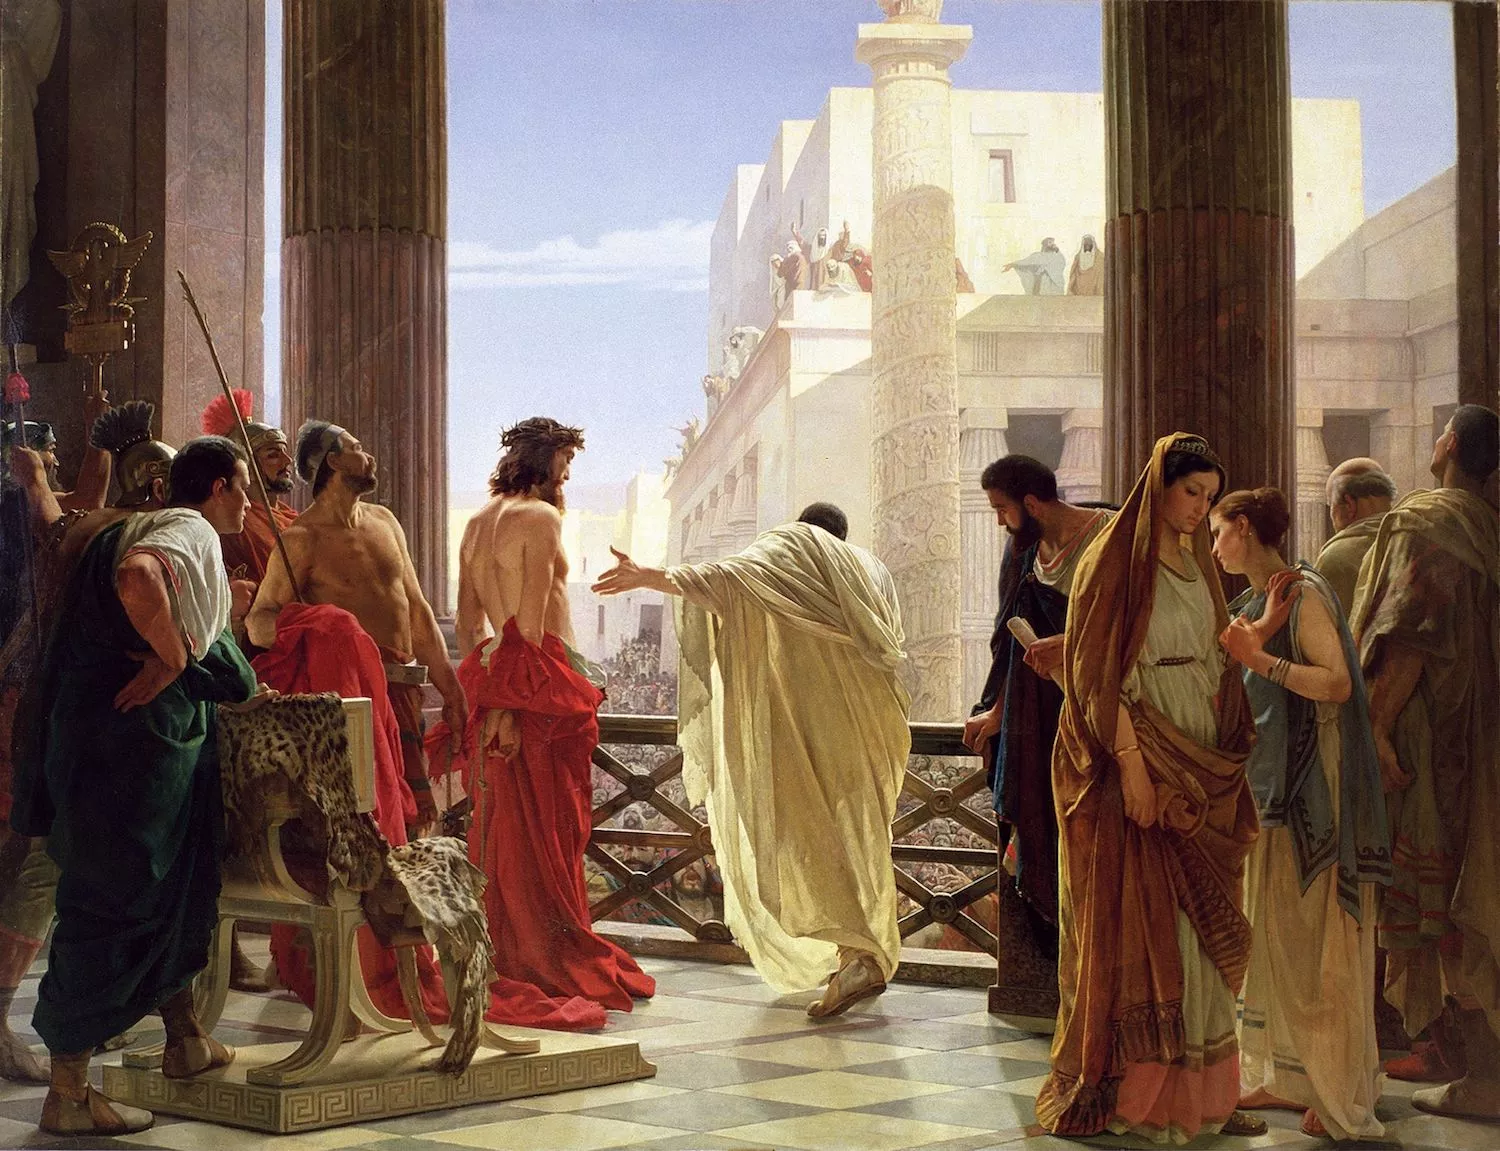 Retrat del judici de Jesús davant de Pons Pilat, d'Antonio Ciseri  (1871)